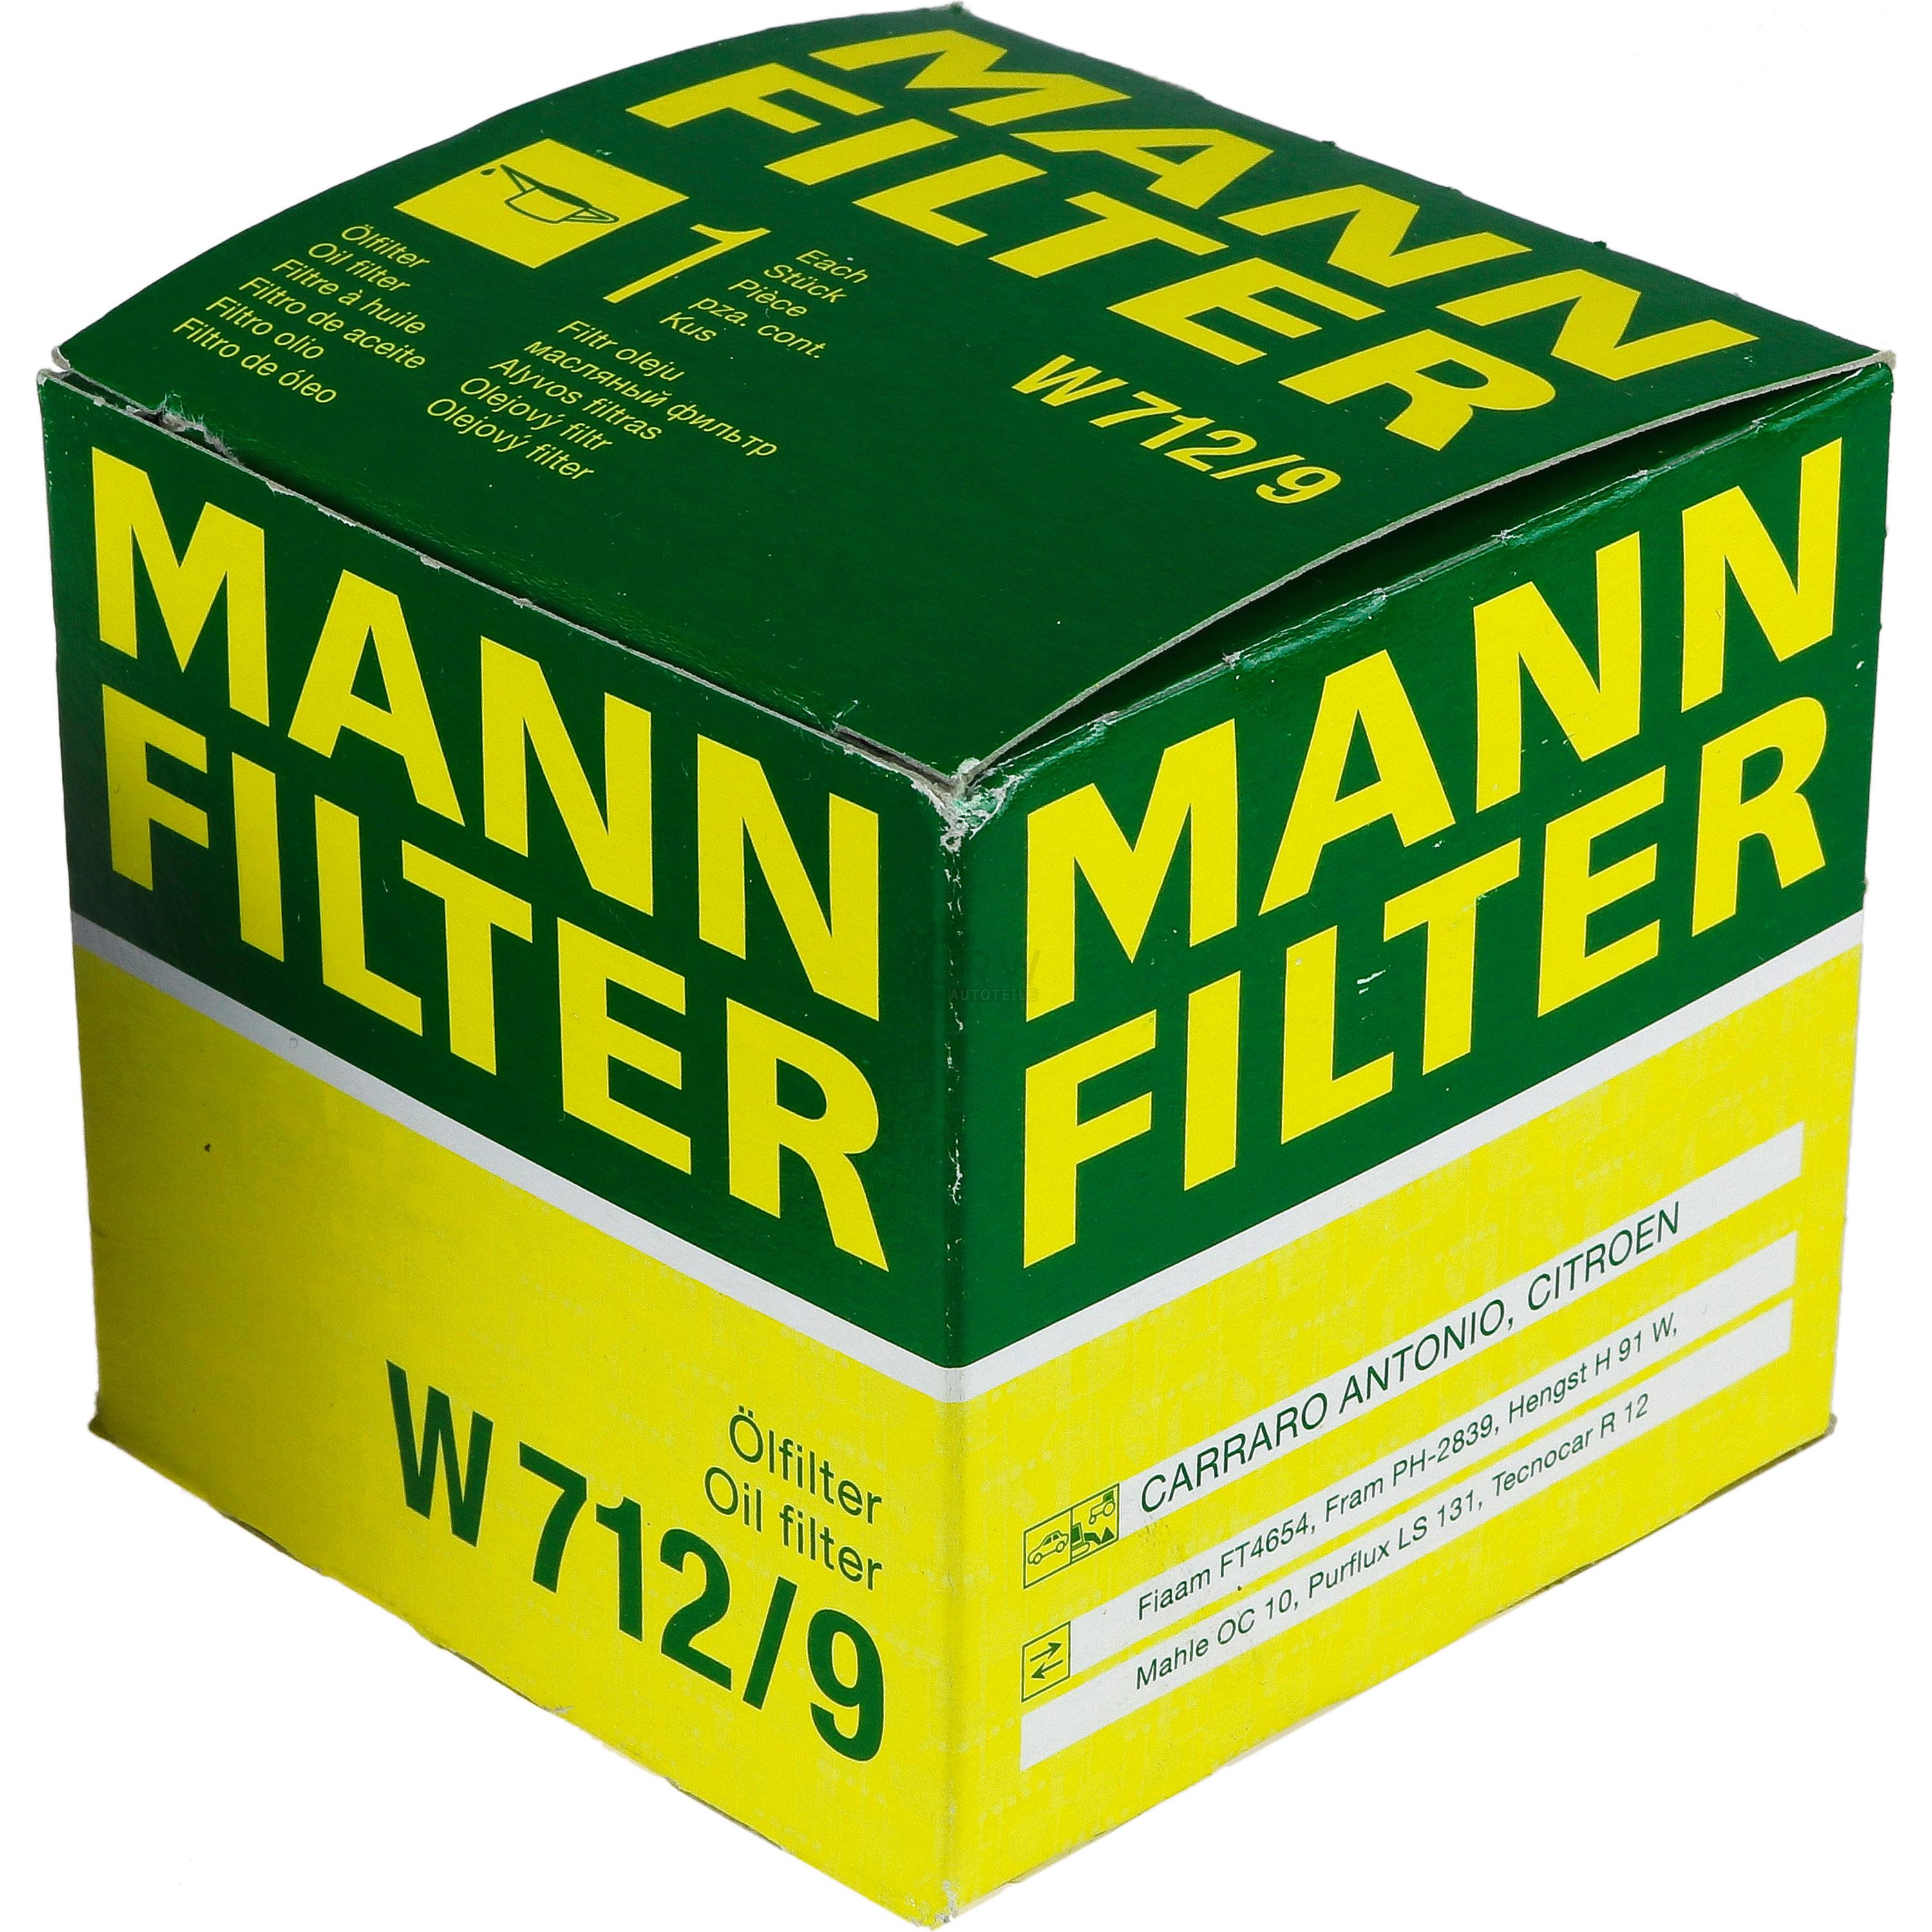 MANN-FILTER Ölfilter W 712/9 Oil Filter